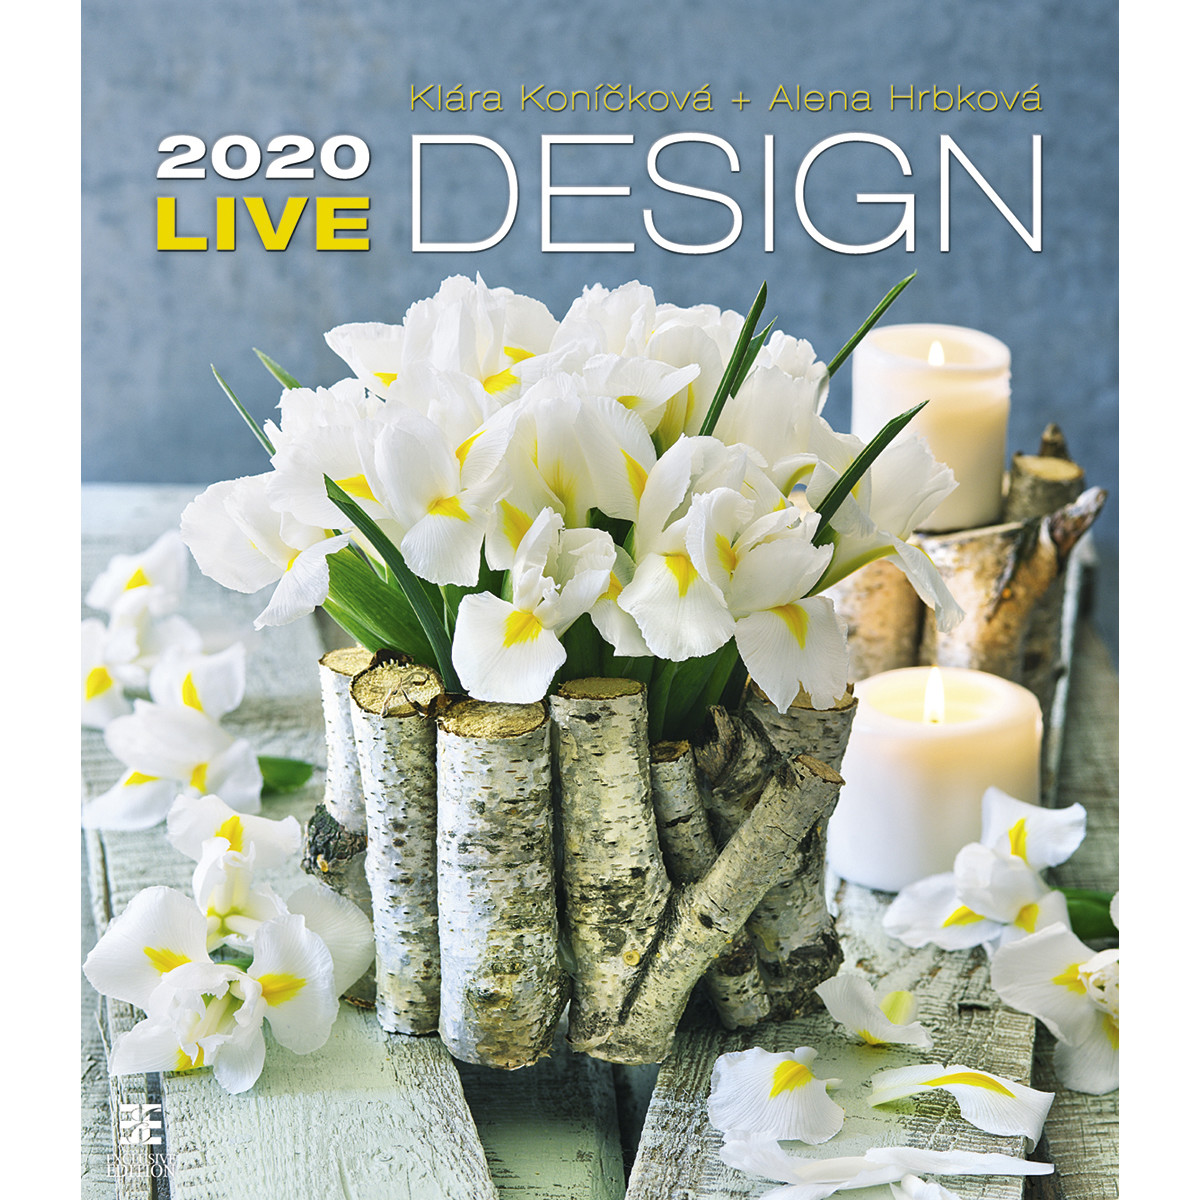 

Календарь настенный Live Design на 2020 год